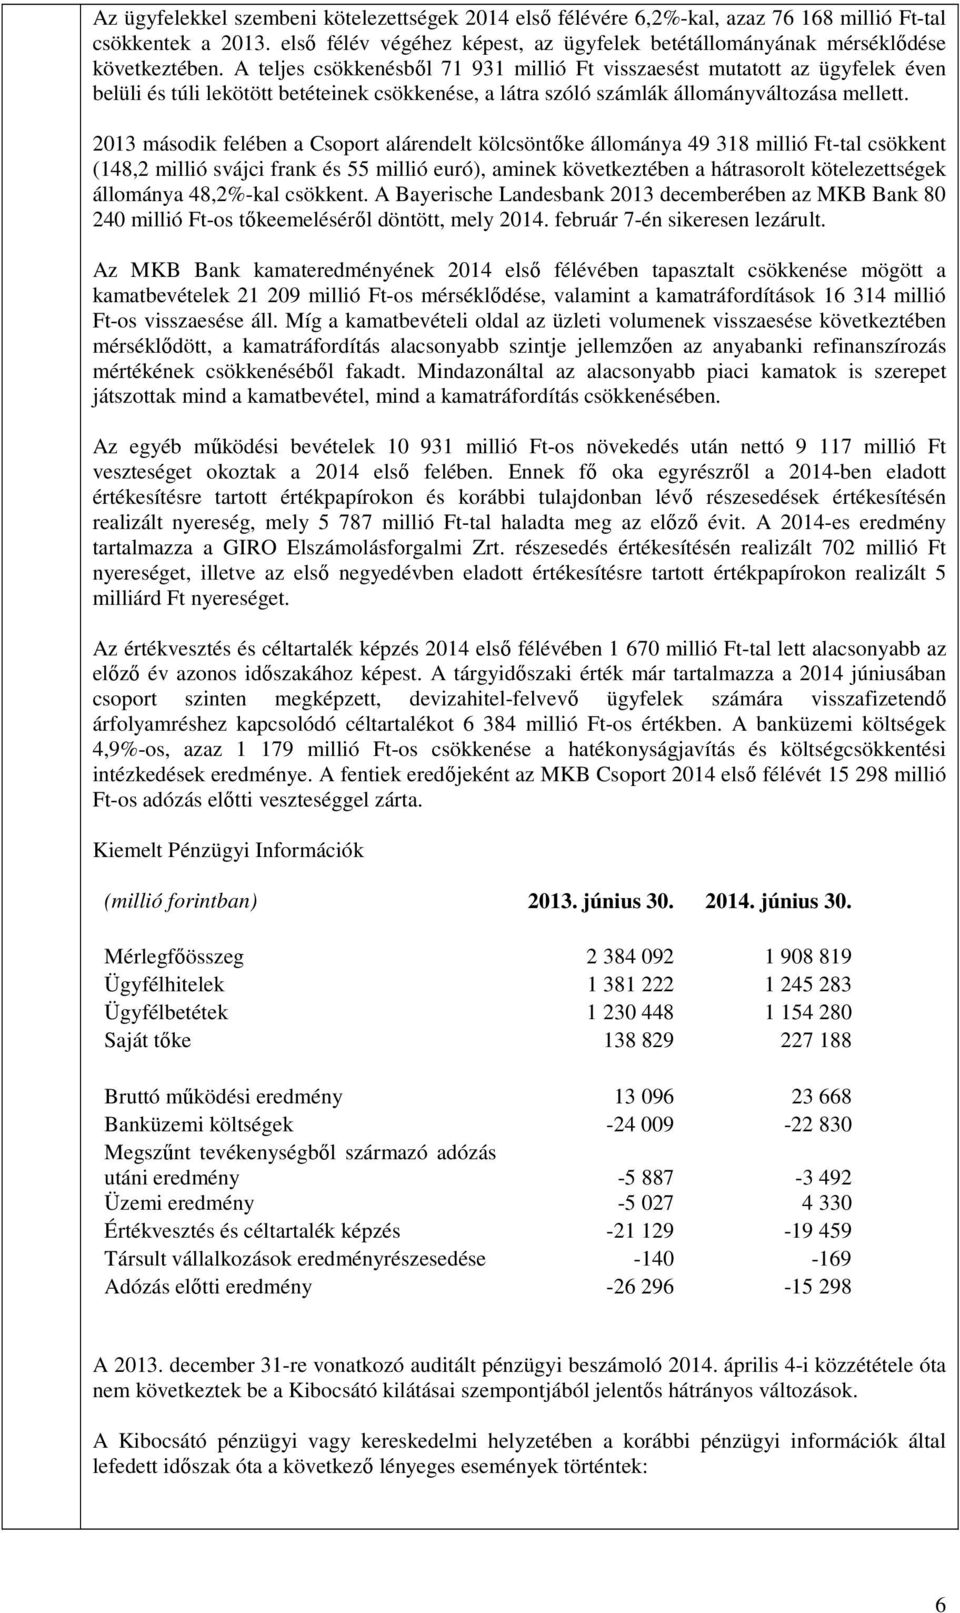 2013 második felében a Csoport alárendelt kölcsöntőke állománya 49 318 millió Ft-tal csökkent (148,2 millió svájci frank és 55 millió euró), aminek következtében a hátrasorolt kötelezettségek